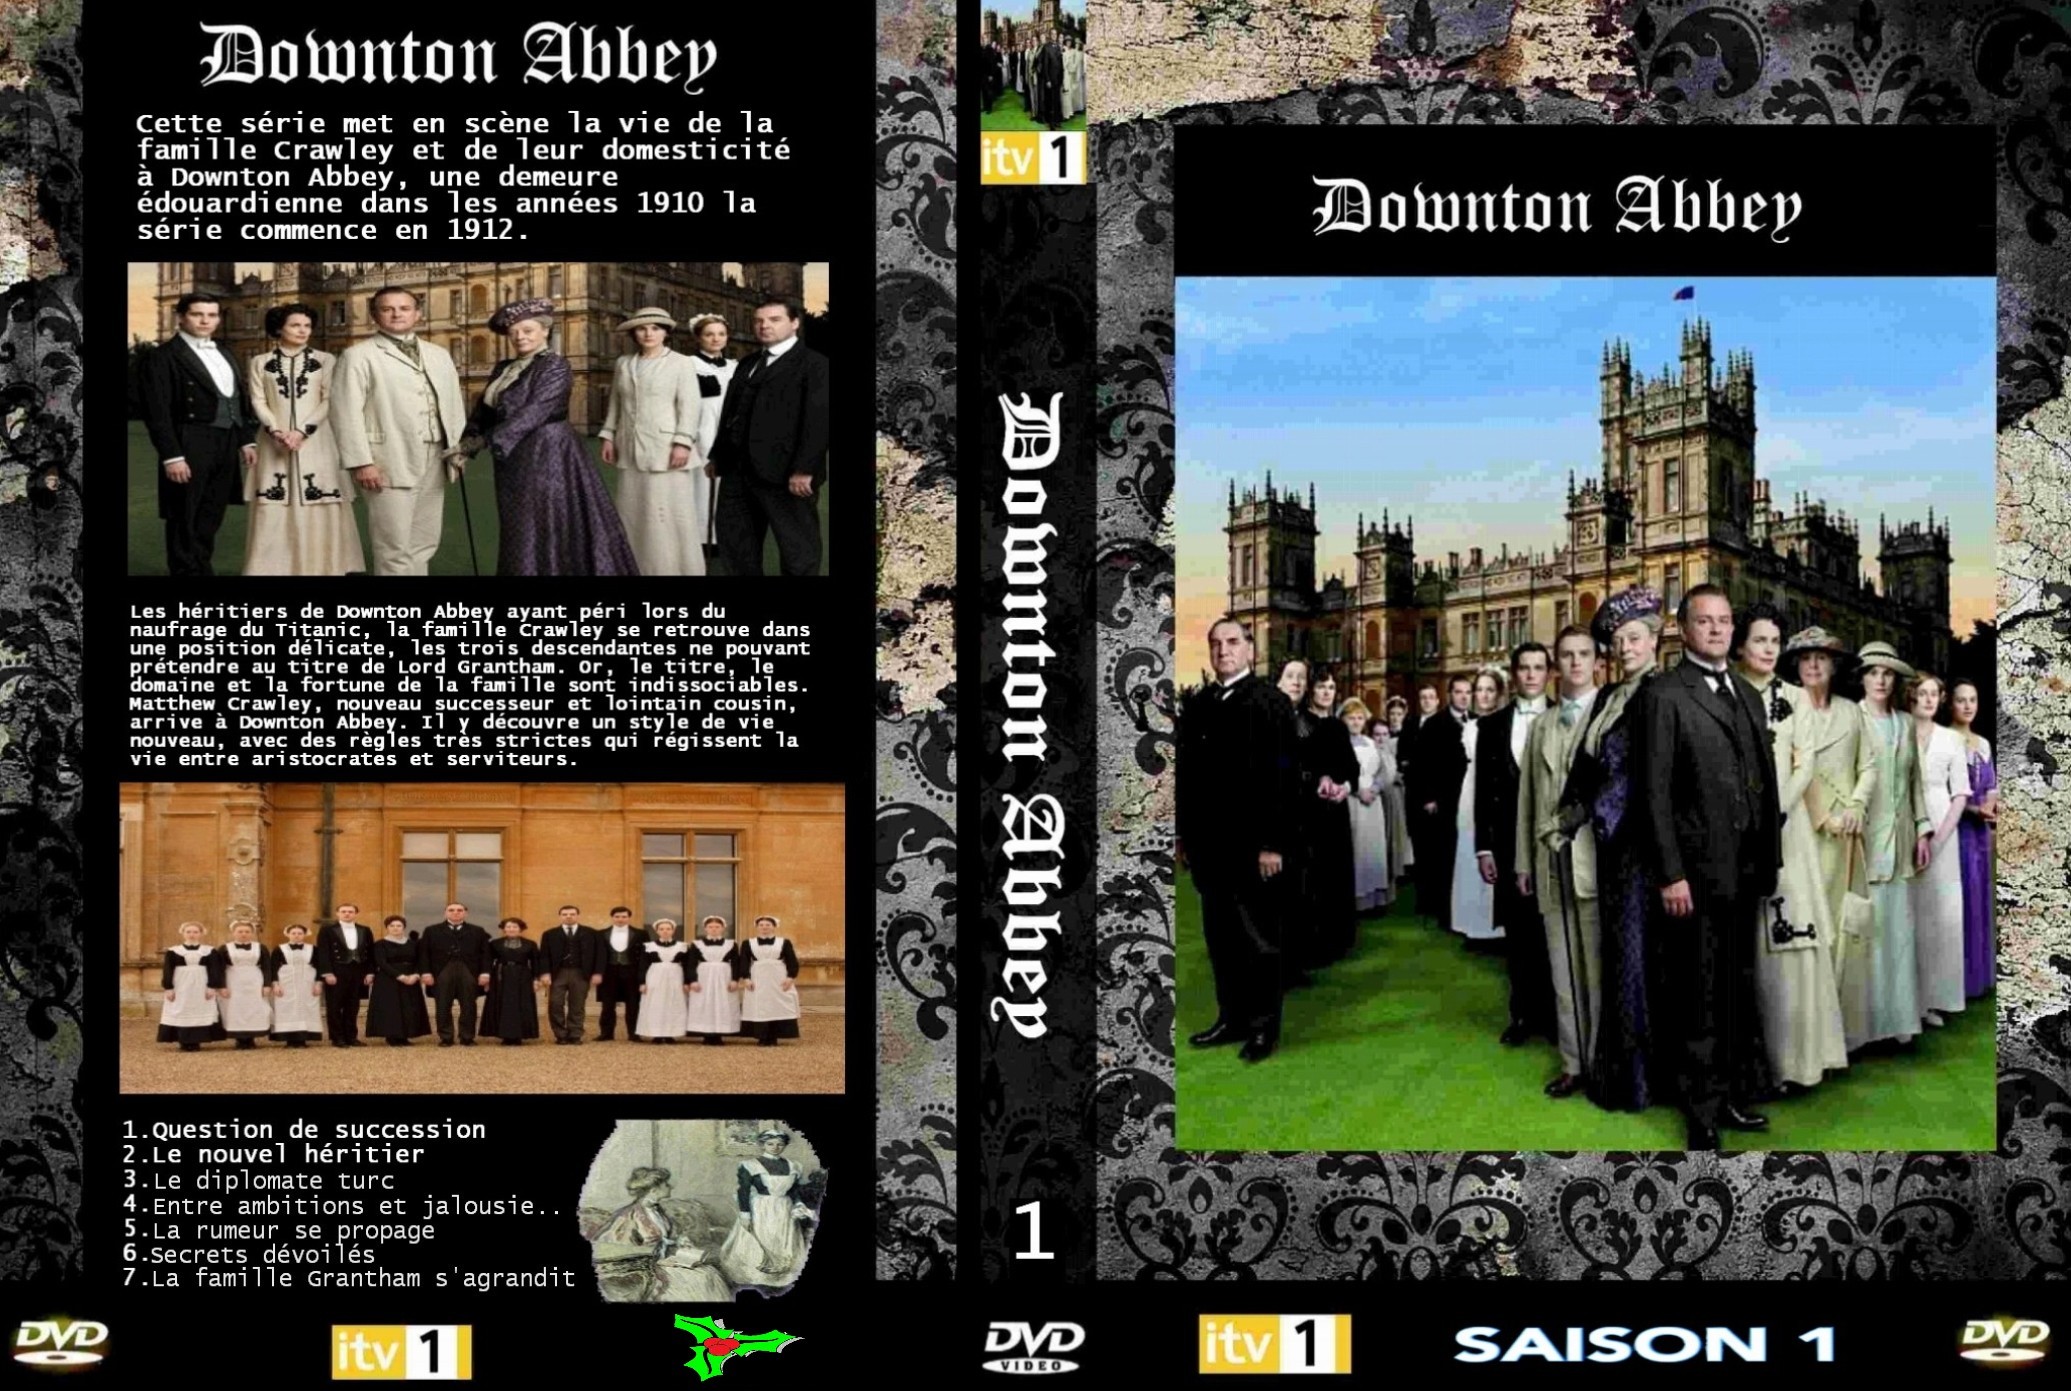 Jaquette DVD Downton Abbey Saison 1 custom